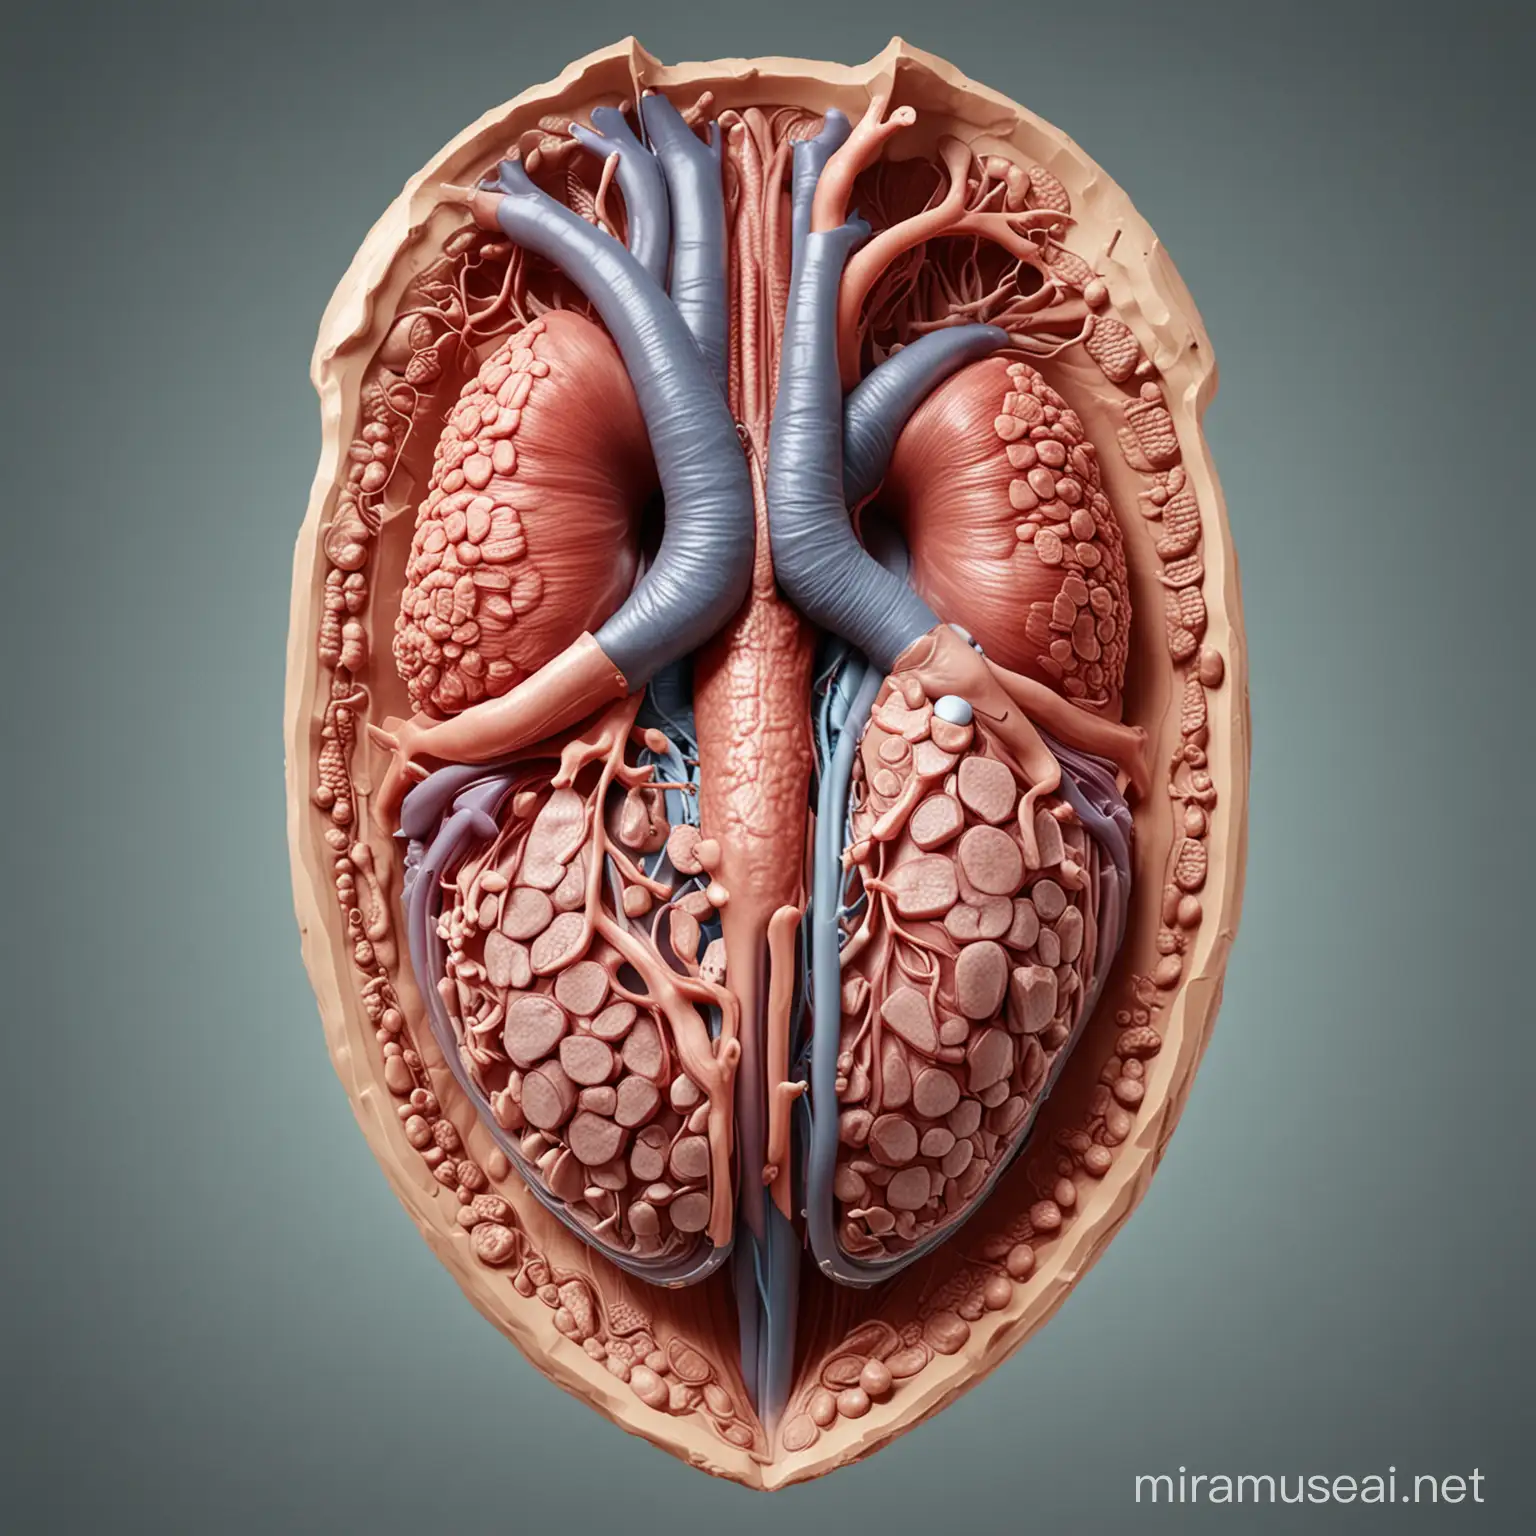 3D UltraModel of Kidney Organ Shielded by Surrounding Glands